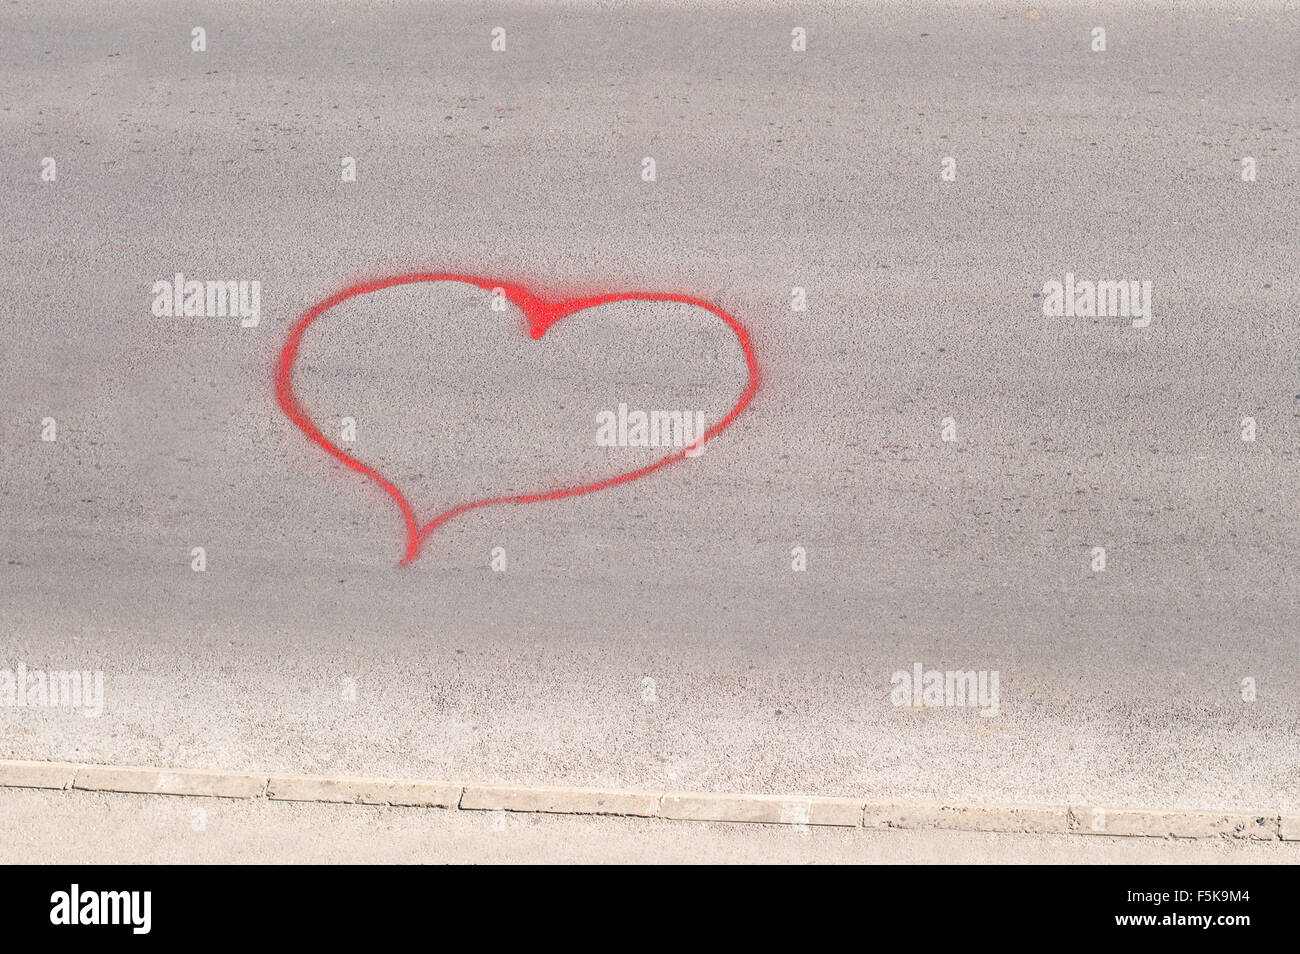 Heart shape drawn on a street asphalt by a spray Stock Photo